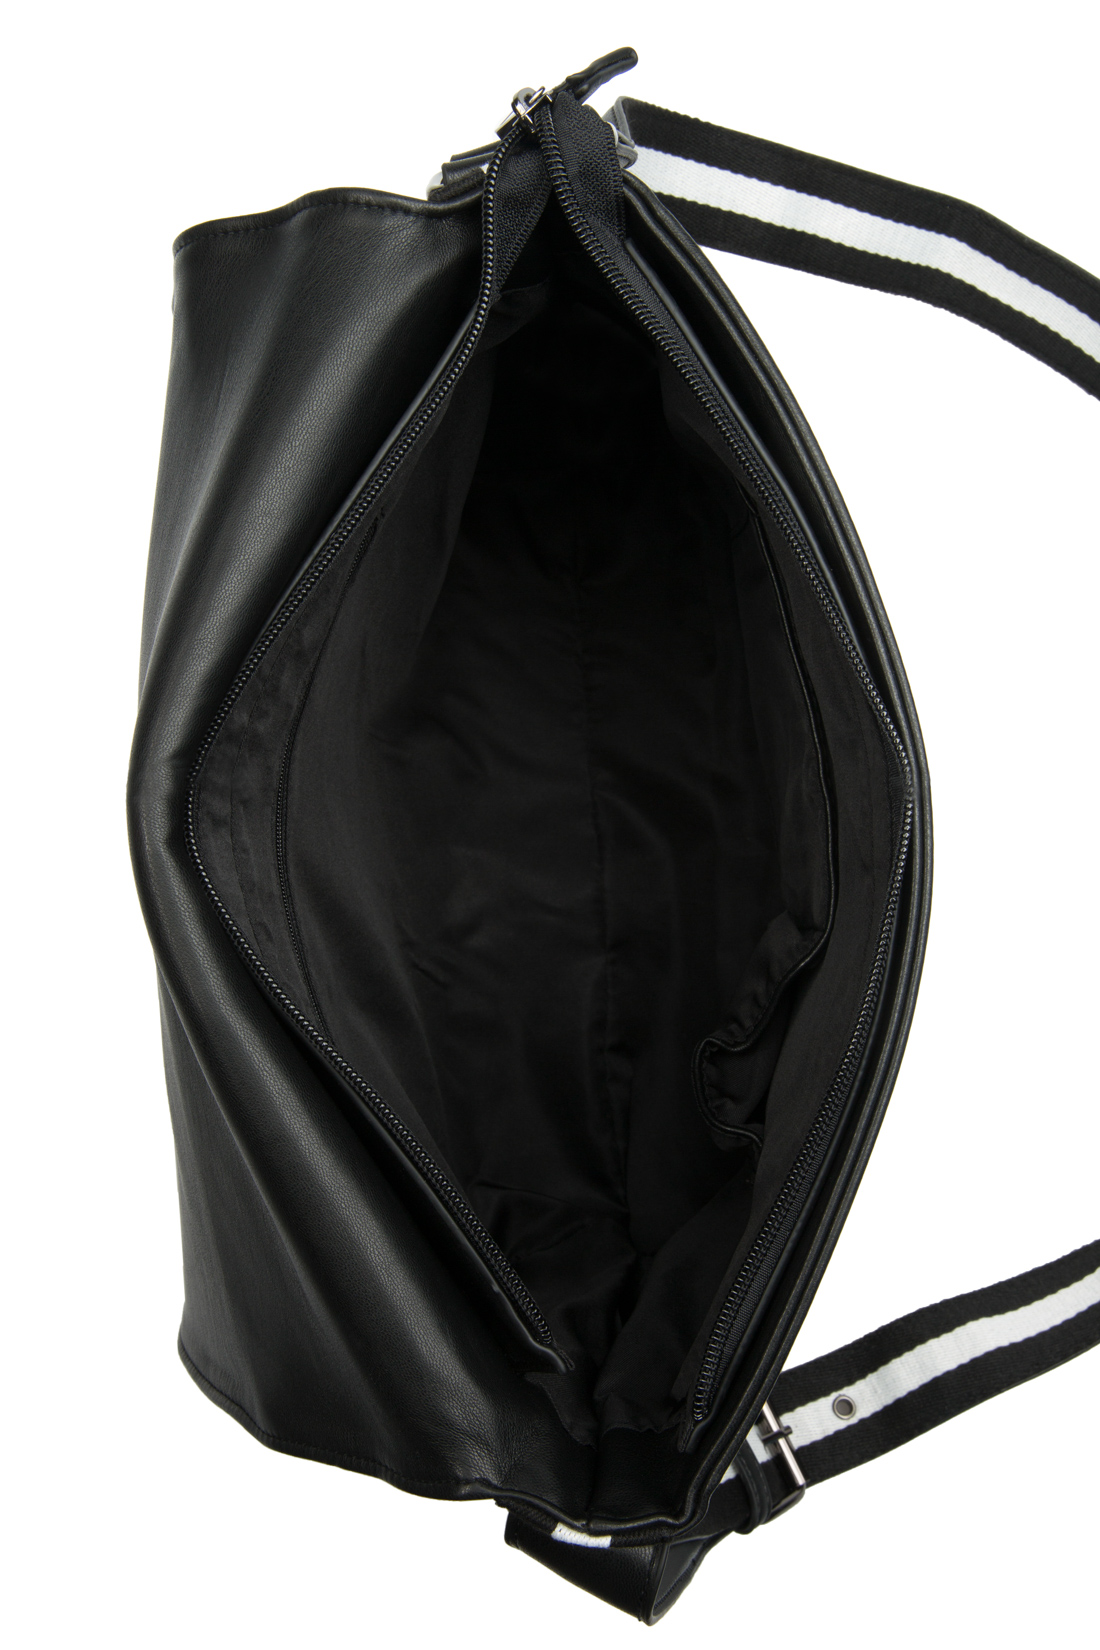 Сумка через плечо (арт. baon B877001), размер Без/раз, цвет черный Сумка через плечо (арт. baon B877001) - фото 3